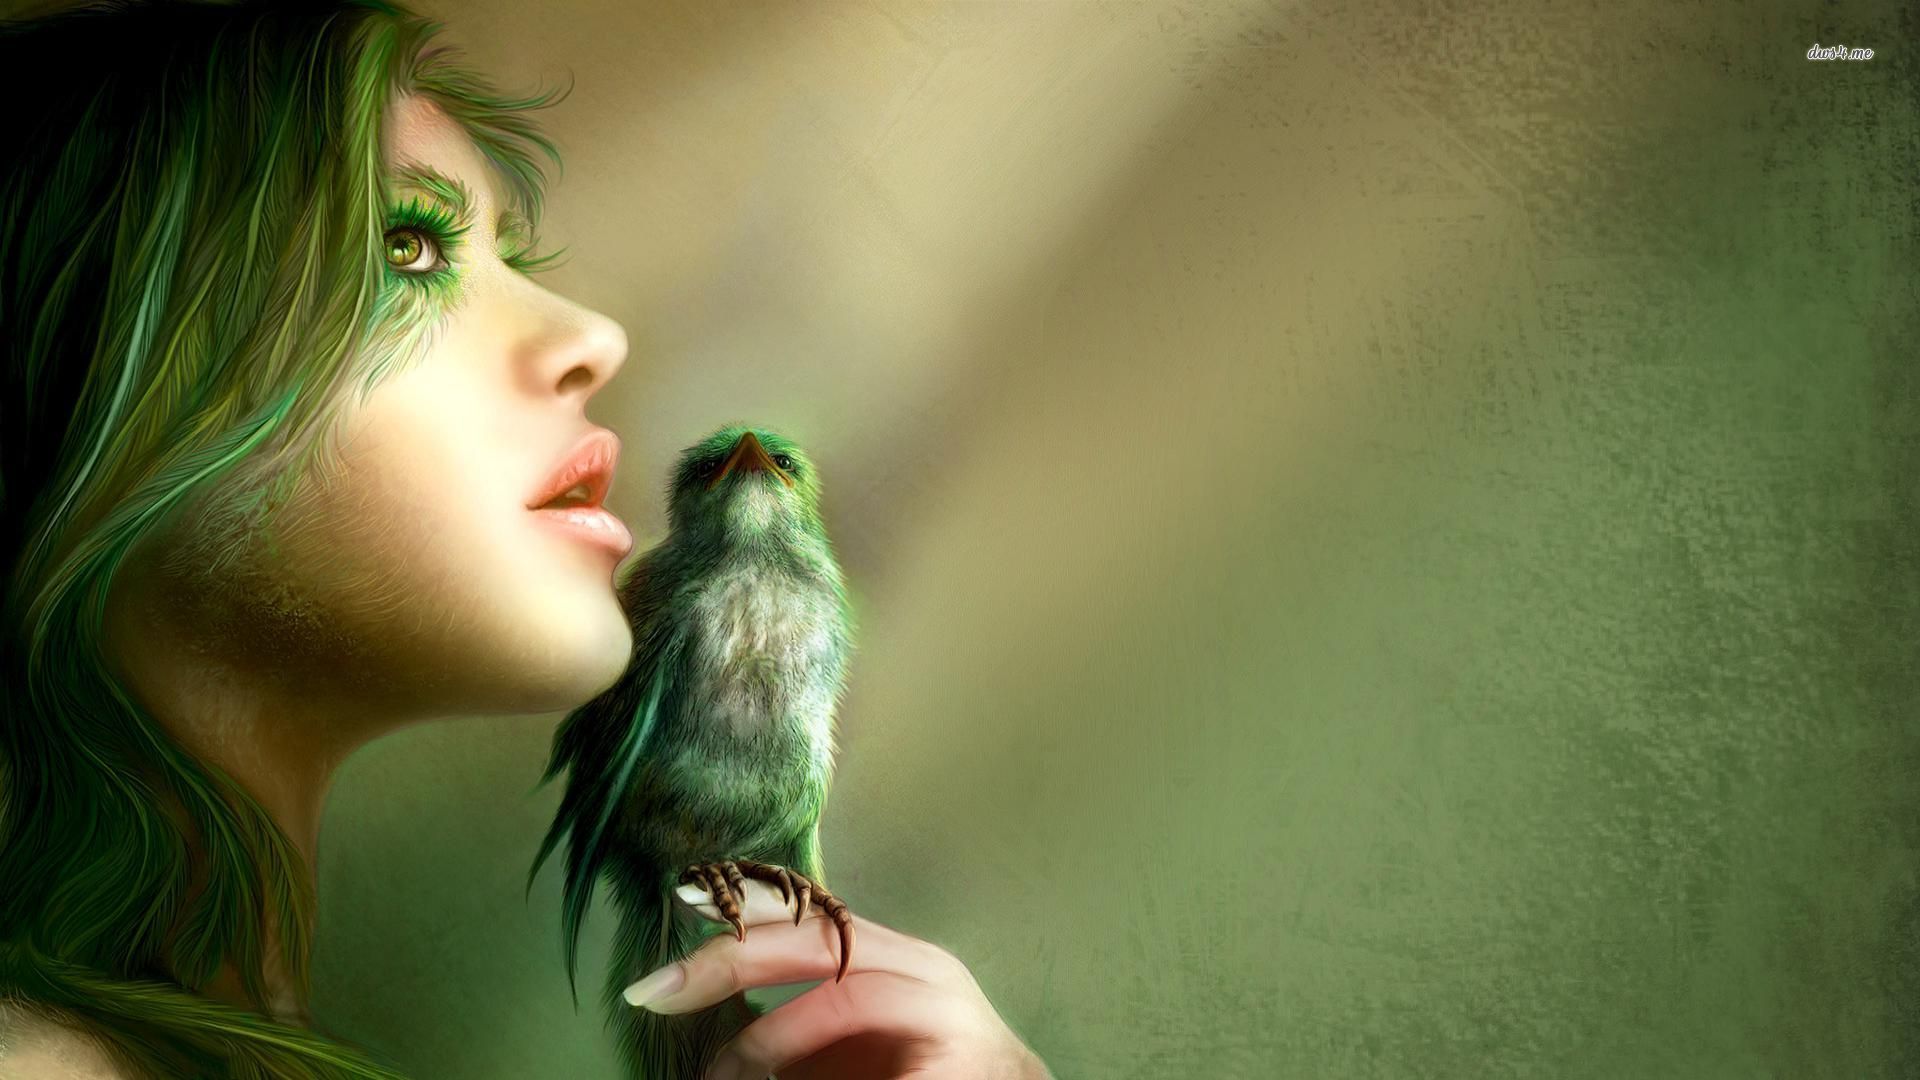 Green Girl With Bird - HD Wallpaper 